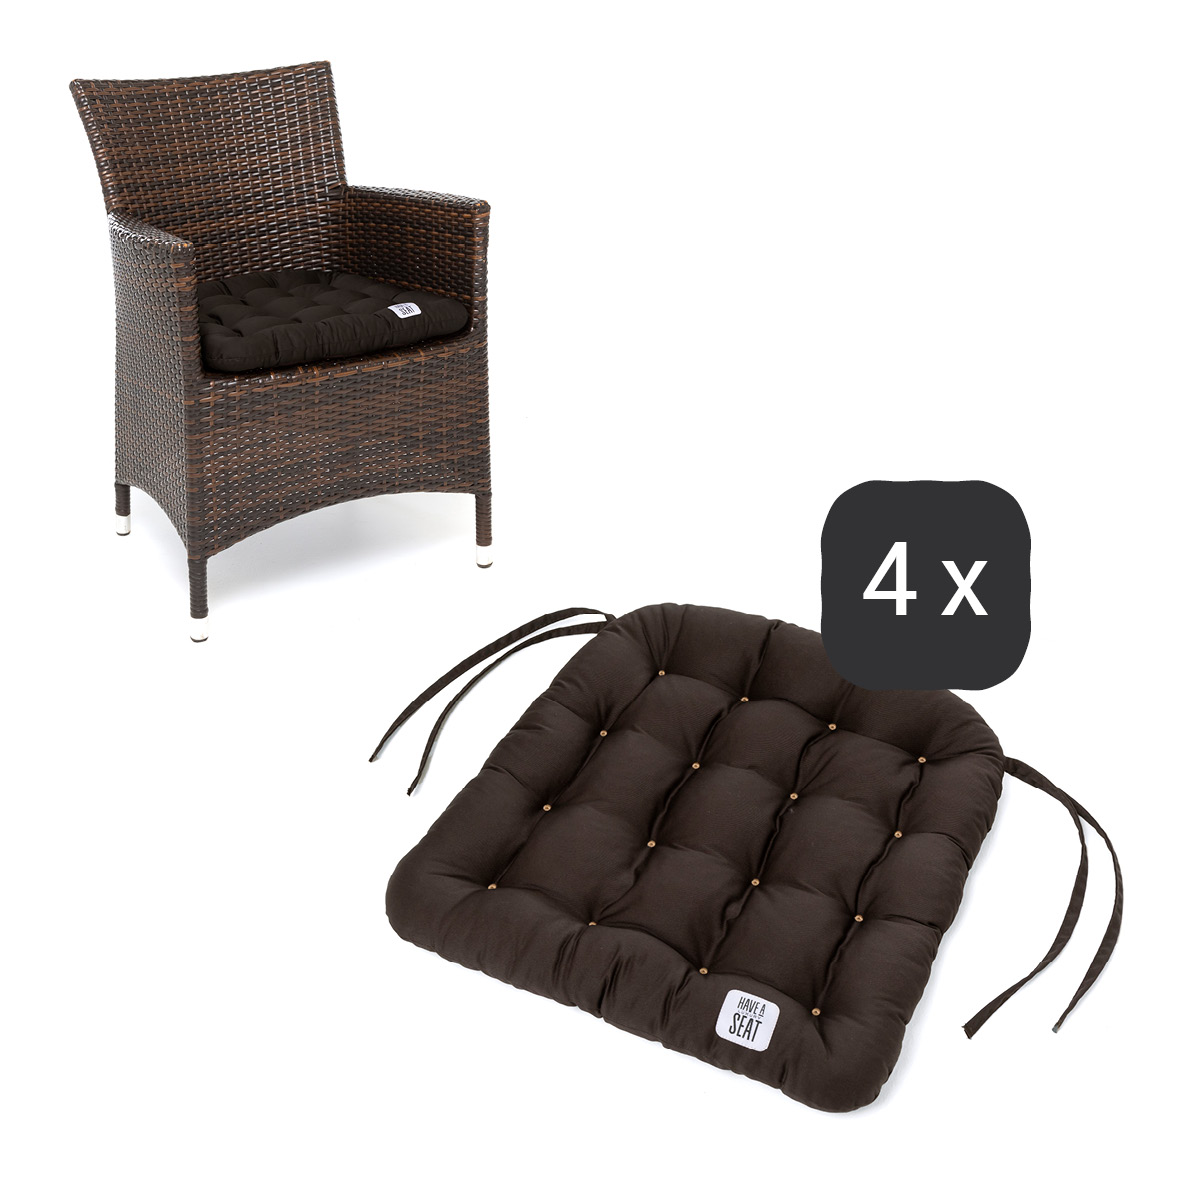 Sitzkissen für Rattanstühle 48x46 cm | Braun | 4er Set | Premium-Sitzkomfort | Indoor / Outdoor | waschbar bis 95°C | HAVE A SEAT Living